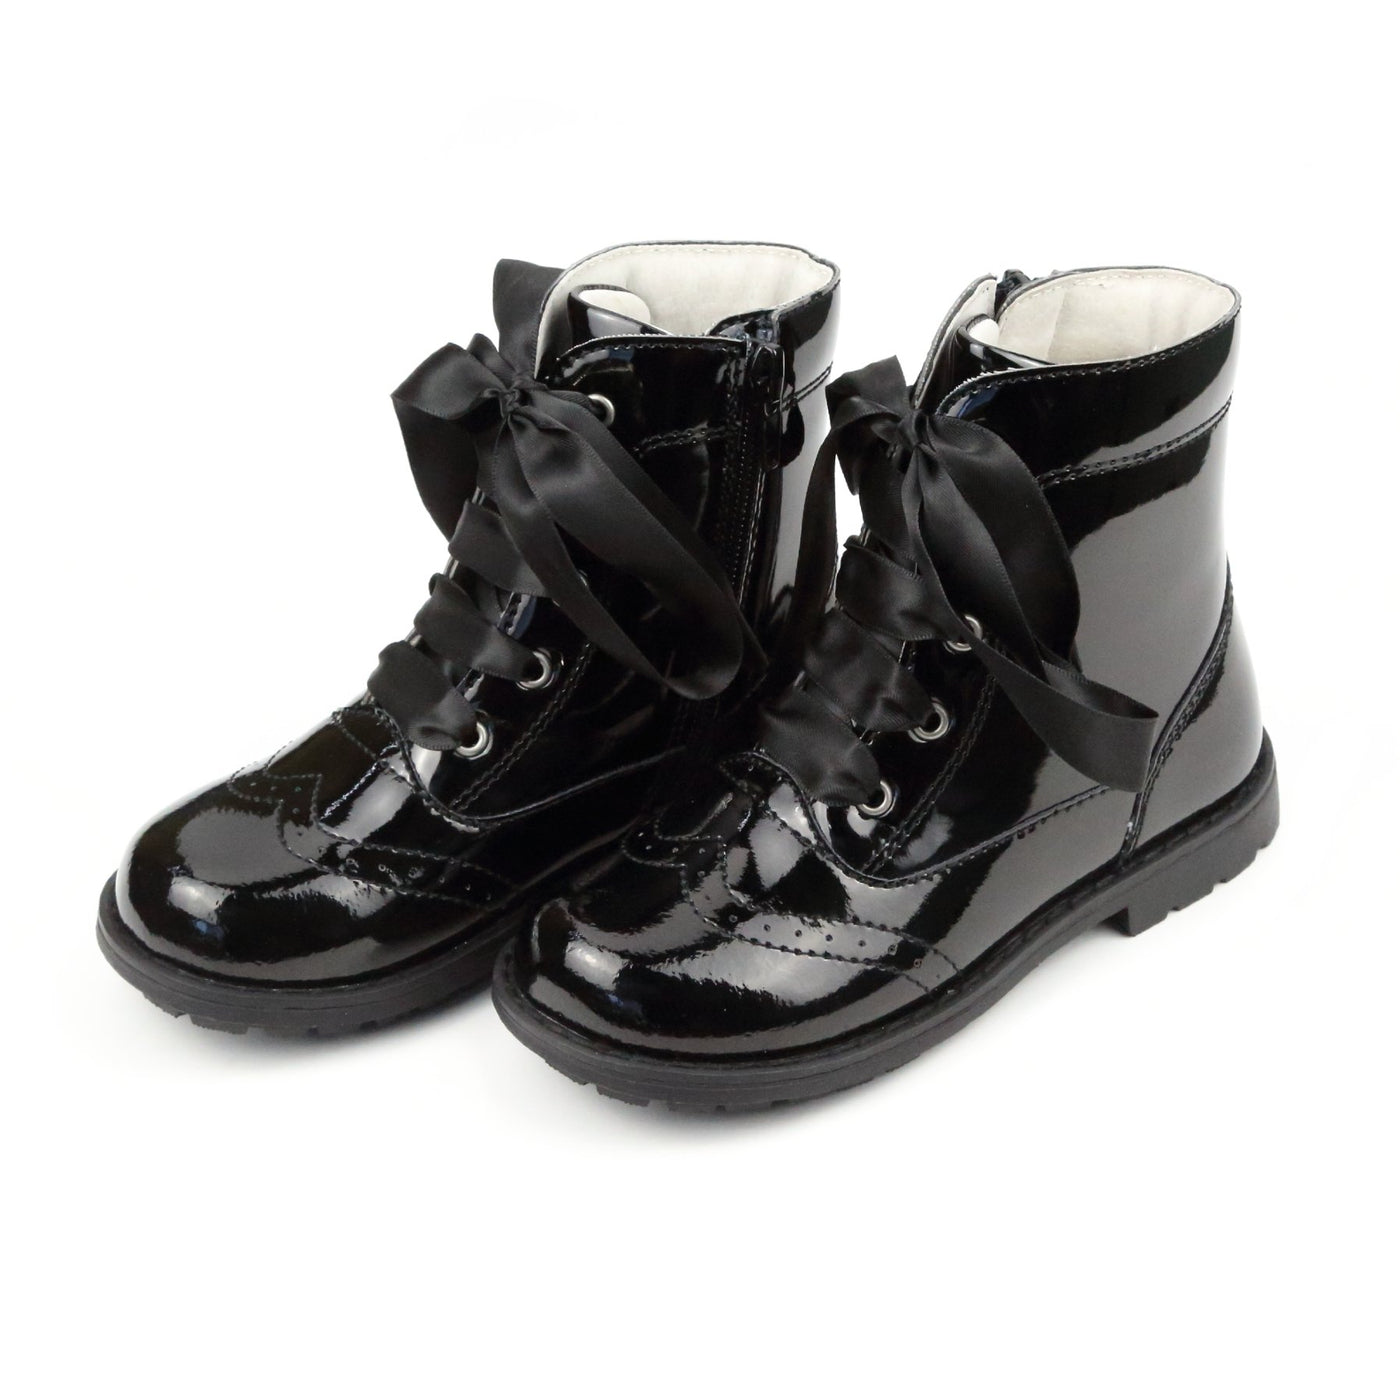 Stellina Lace Boot - Black Patent